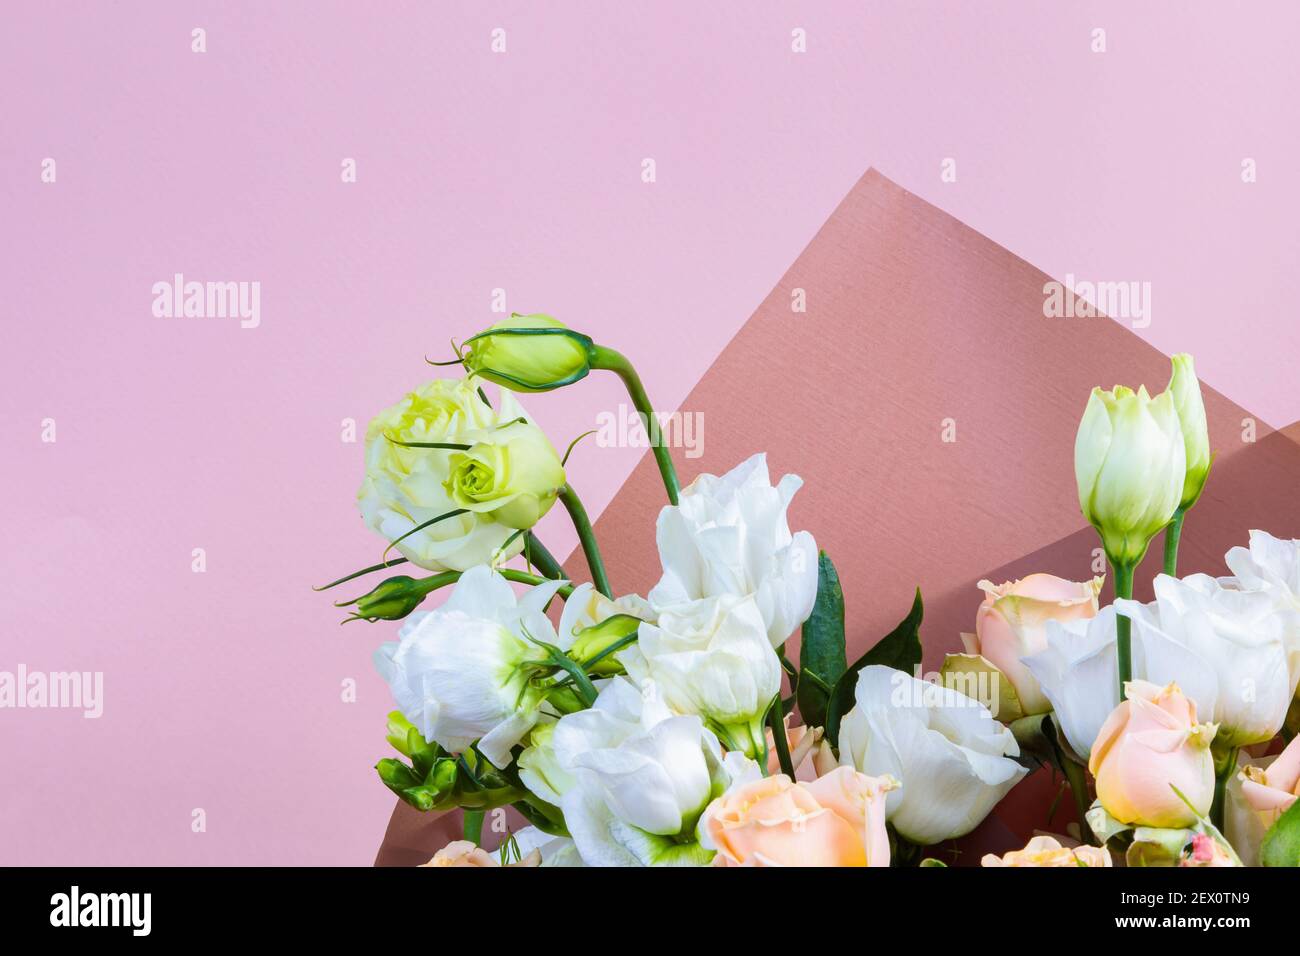 Frisches Bouquet in Pastelltönen von rosa, weiß, grün, gelb. Homogener rosa, blauer Hintergrund. Zartes Bouquet für eine Frau. Stockfoto